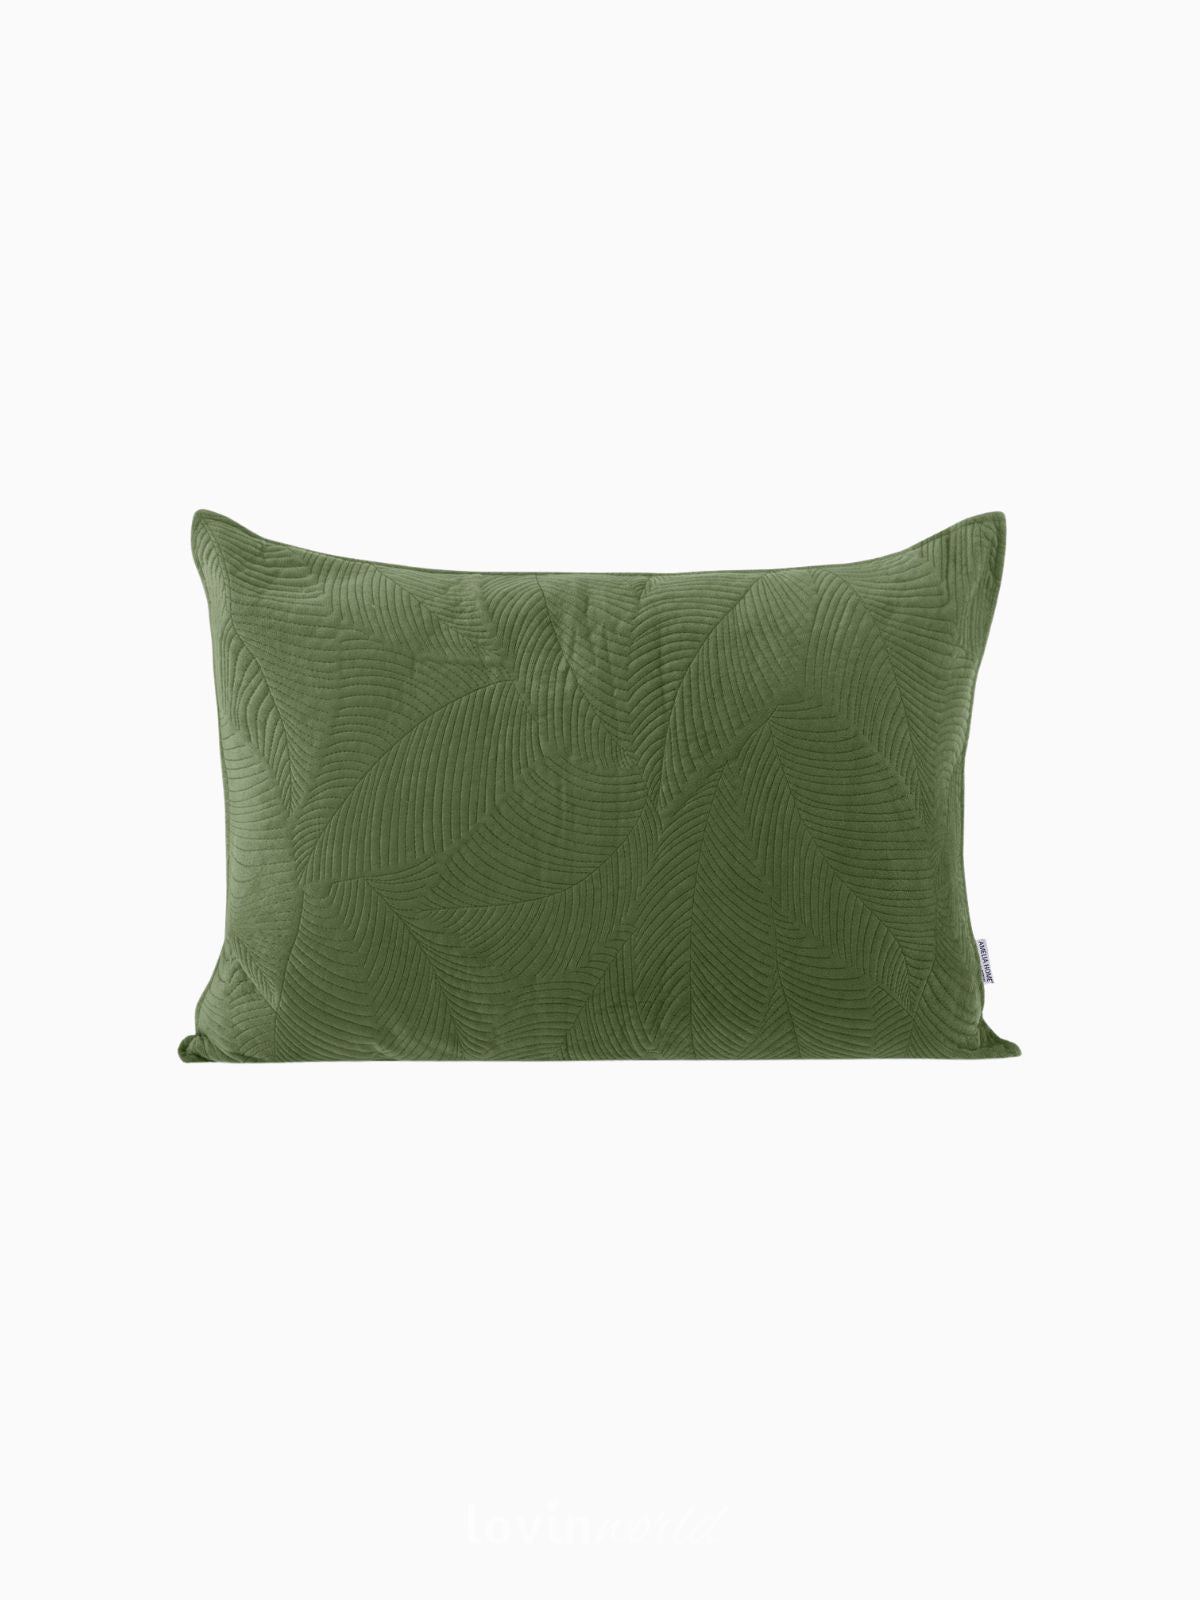 Cuscino decorativo in velluto Palsha, colore verde 50x70 cm.-1